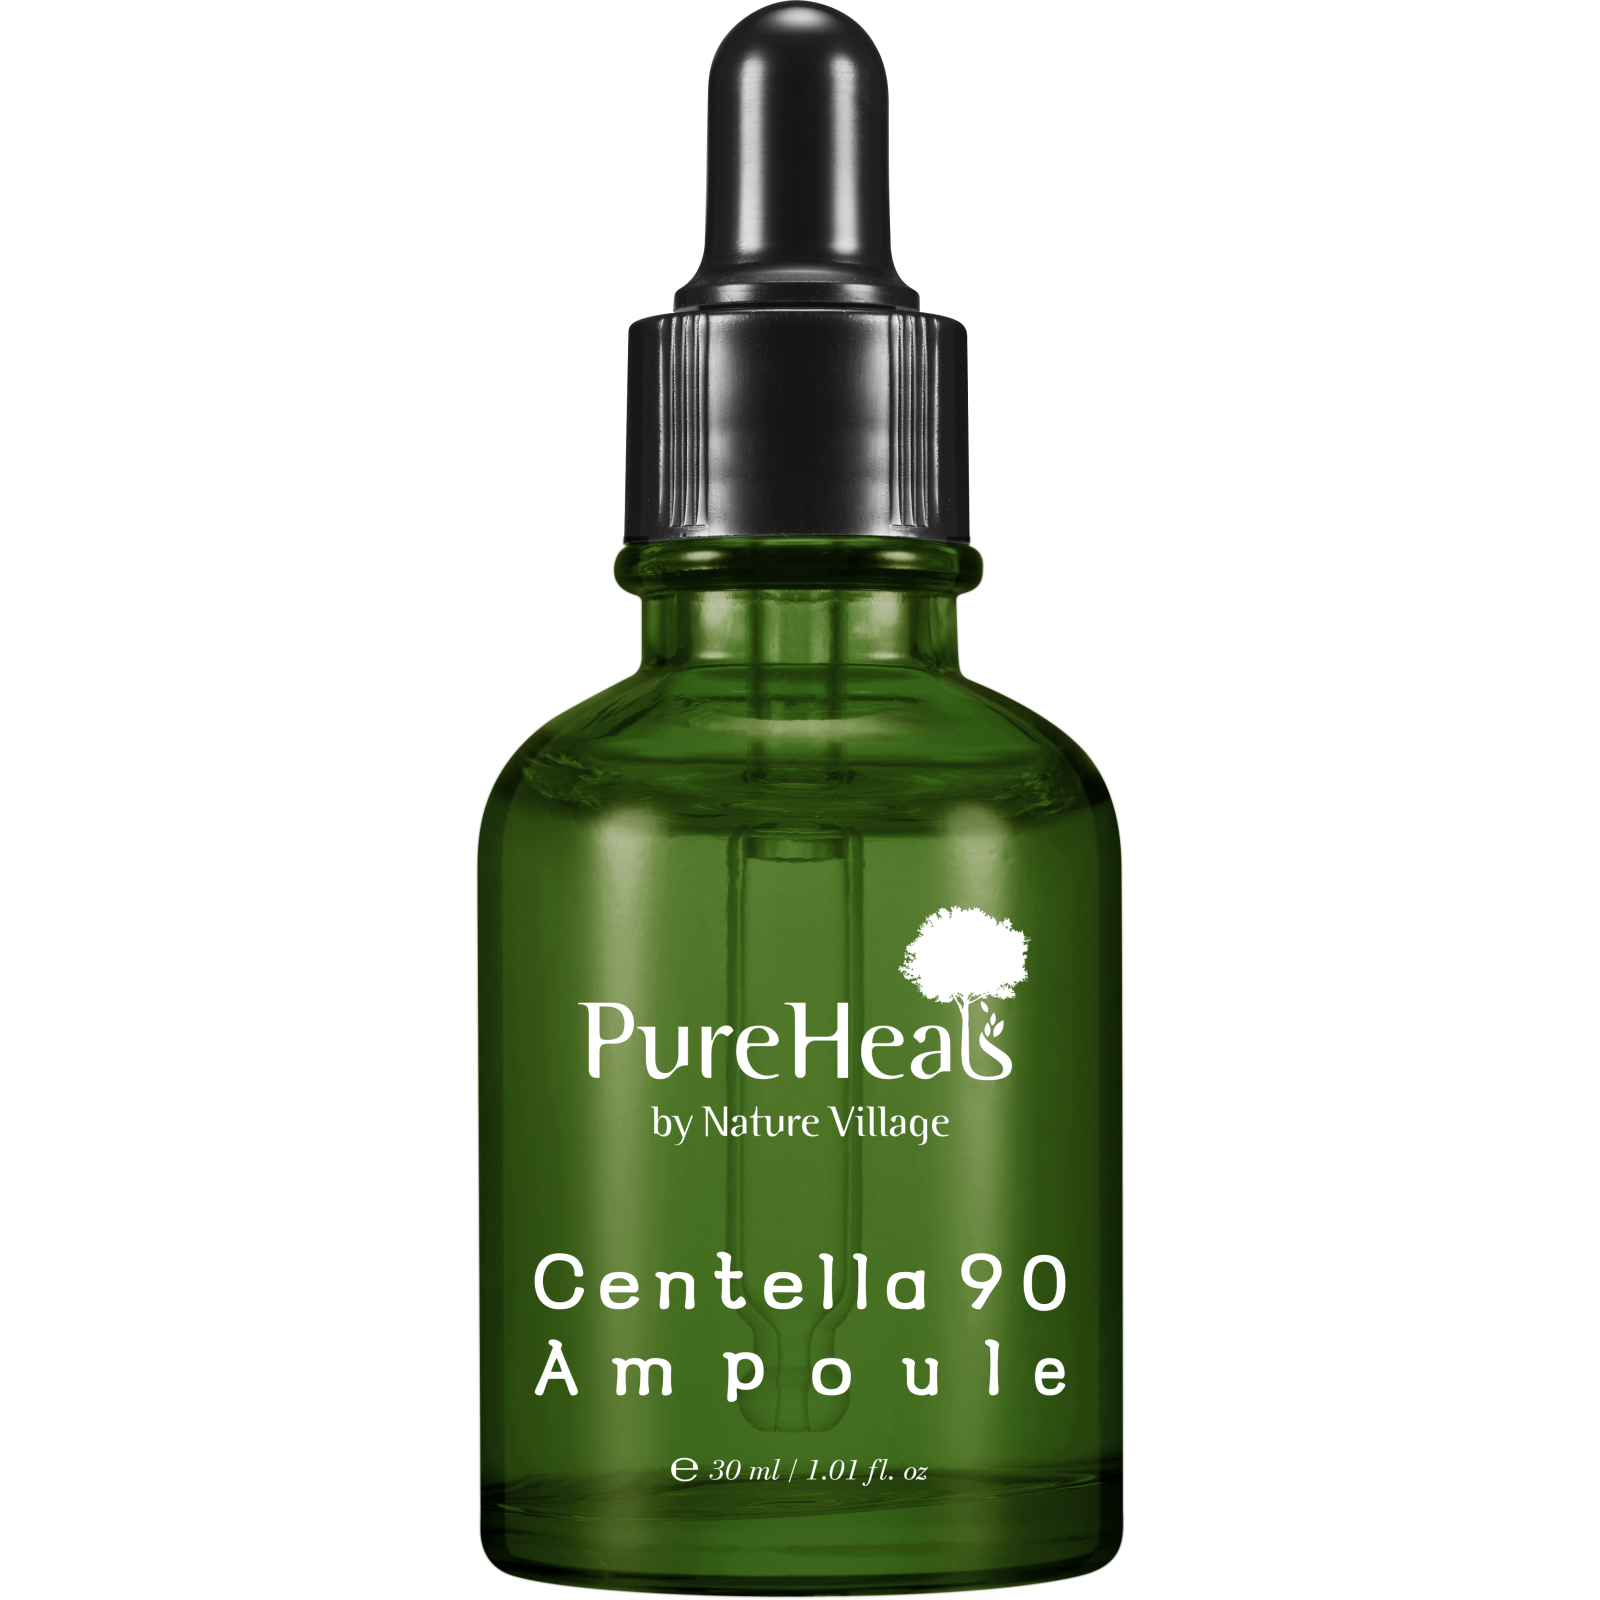 Сыворотка для лица PureHeal's Centella 90 Ampoule Восстанавл. с экстрактом центели 30 мл (8809258172185)